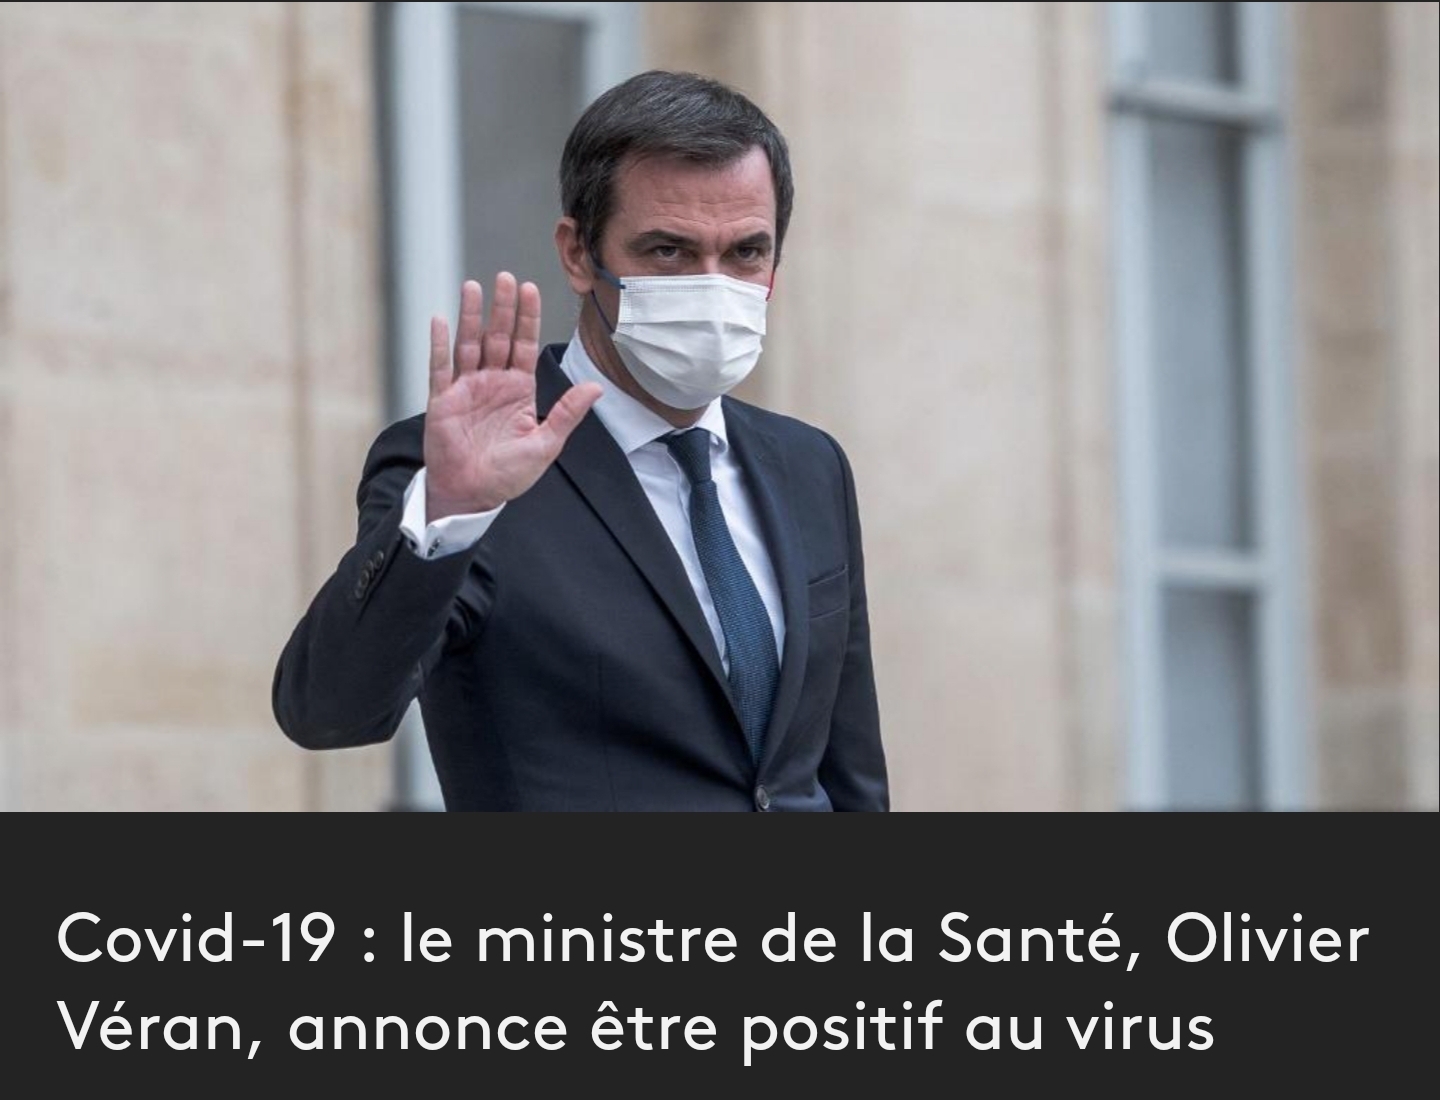 Le ministre de la santé est positif au virus !